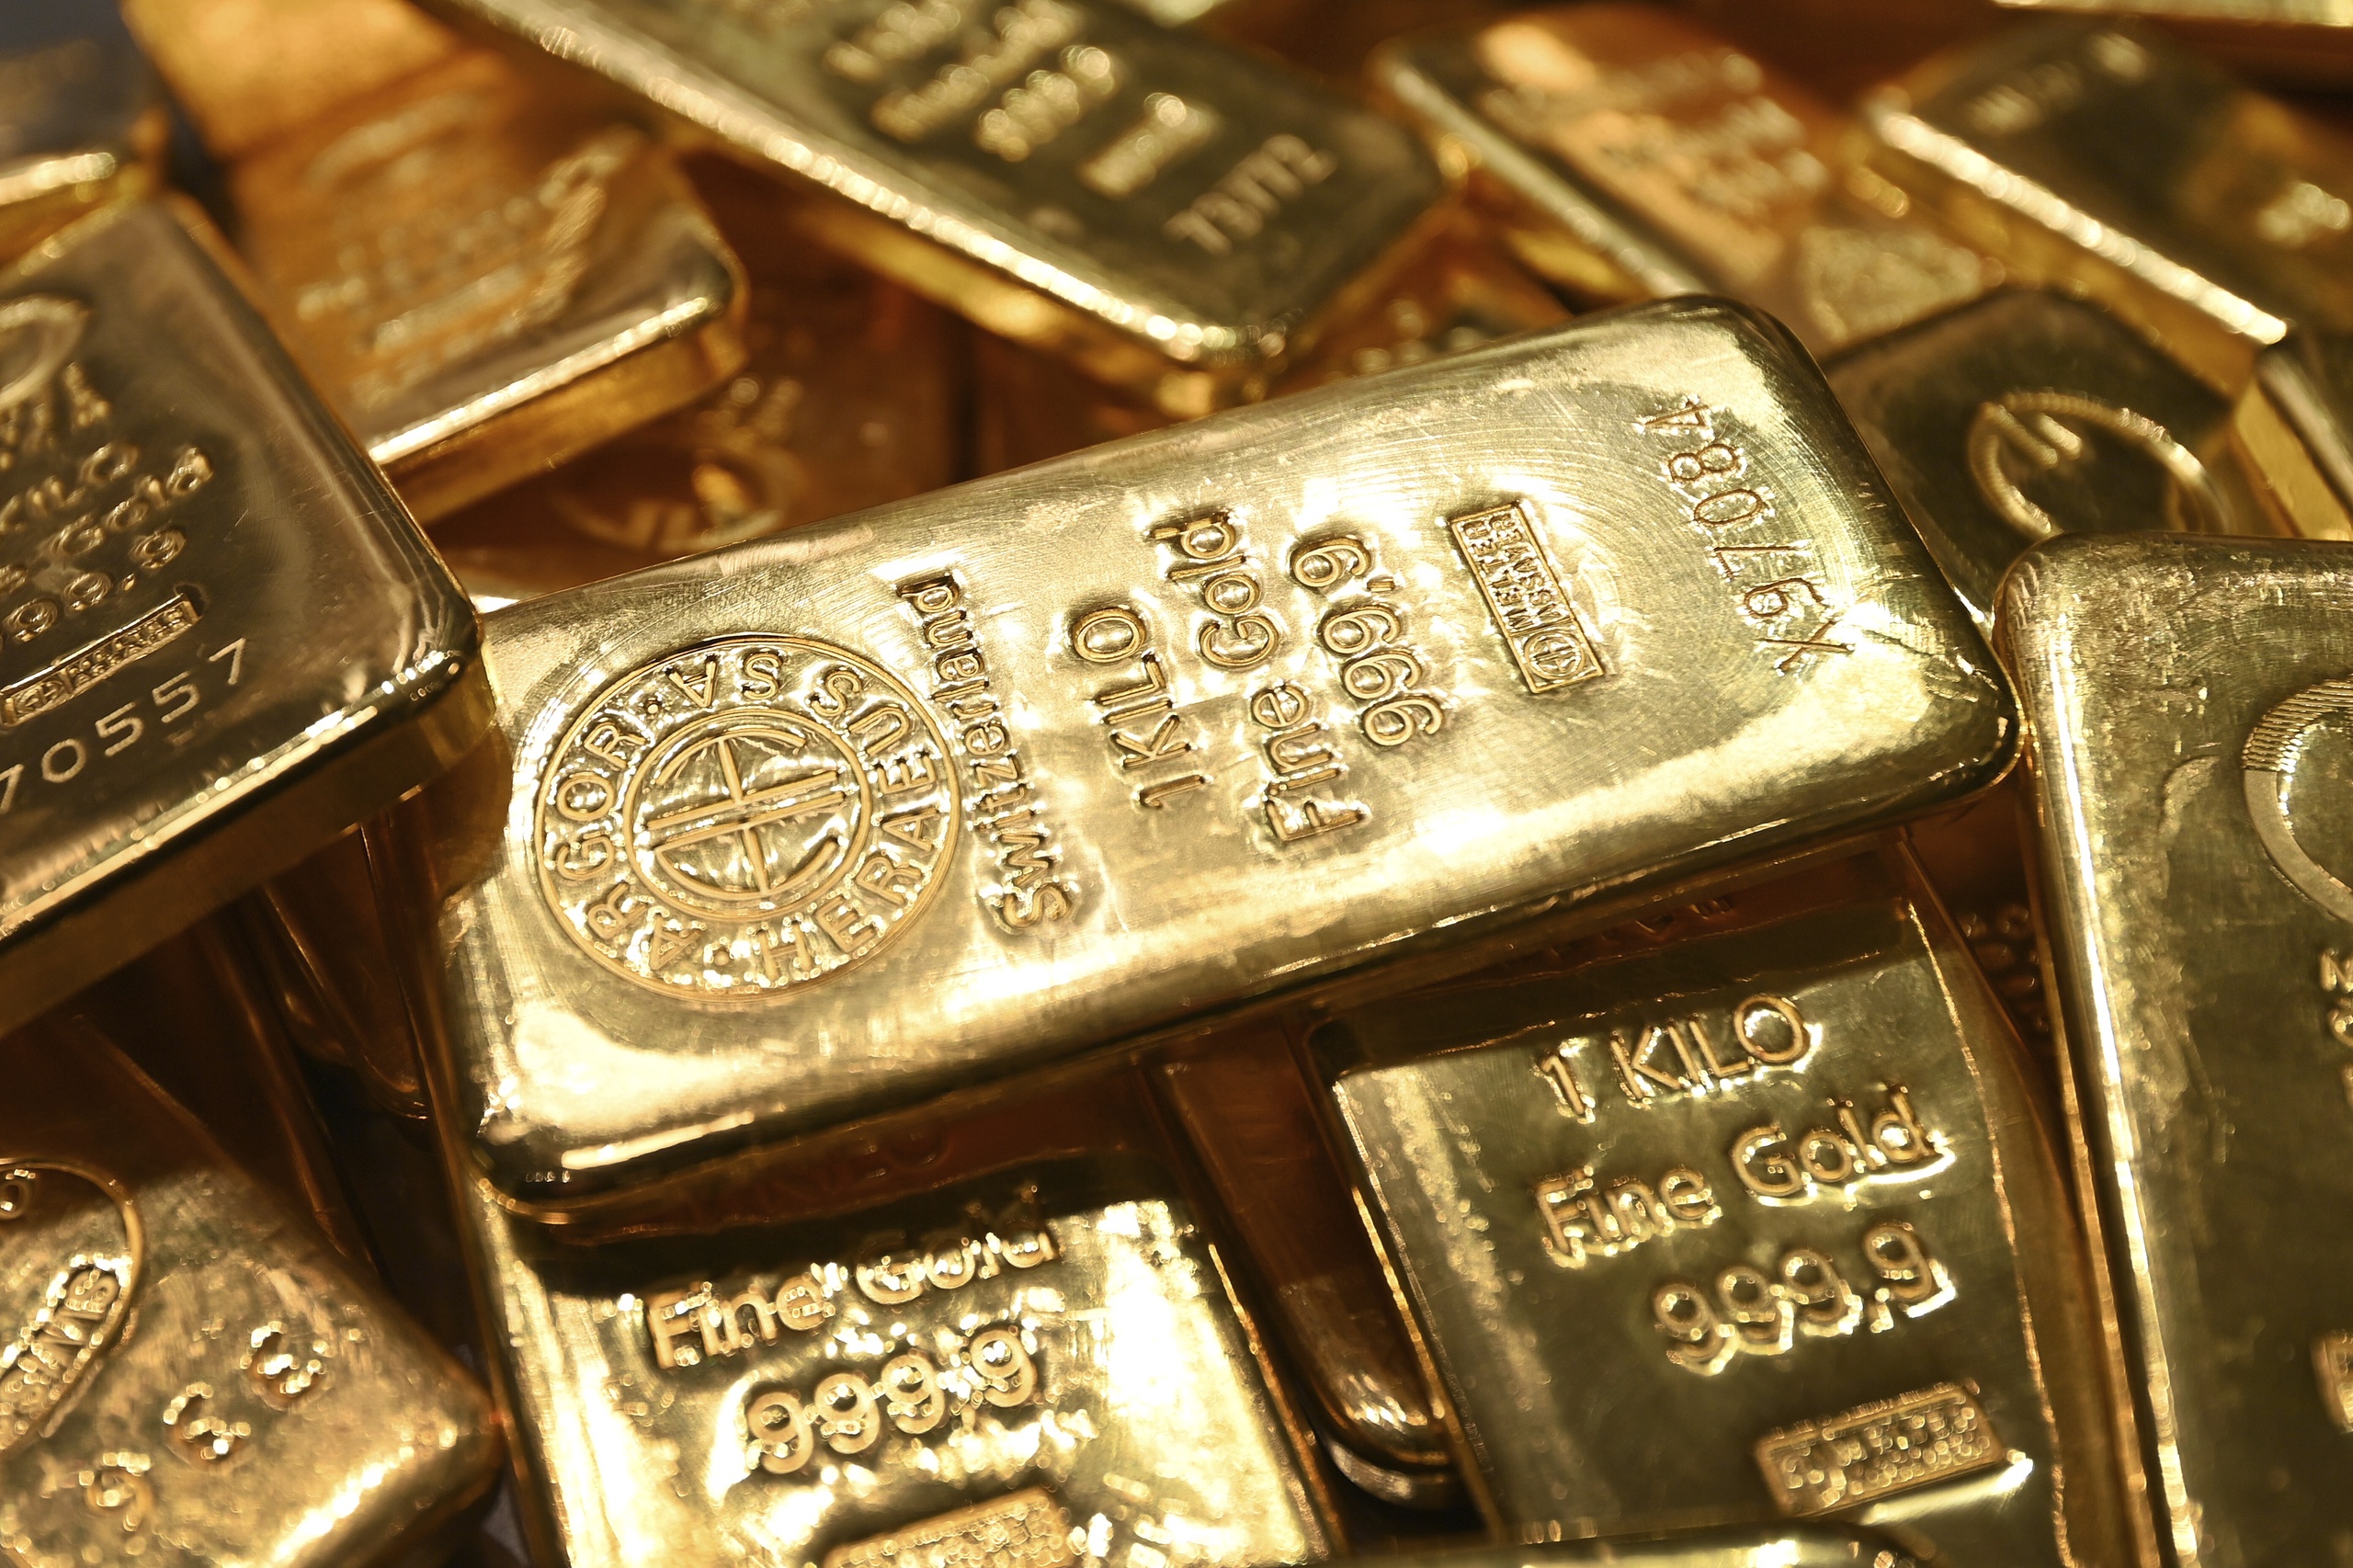 China is recordhoeveelheden goud aan het inslaan. In mei alleen al voegde het land 16 ton aan goud toe aan de reserves. Daarmee groeit de voorraad goud die het land bezit al zeven maanden op rij. In totaal bezit China ruim 2.092 ton goud op dit moment, een groei van ruim 144 ton sinds november 2022. 